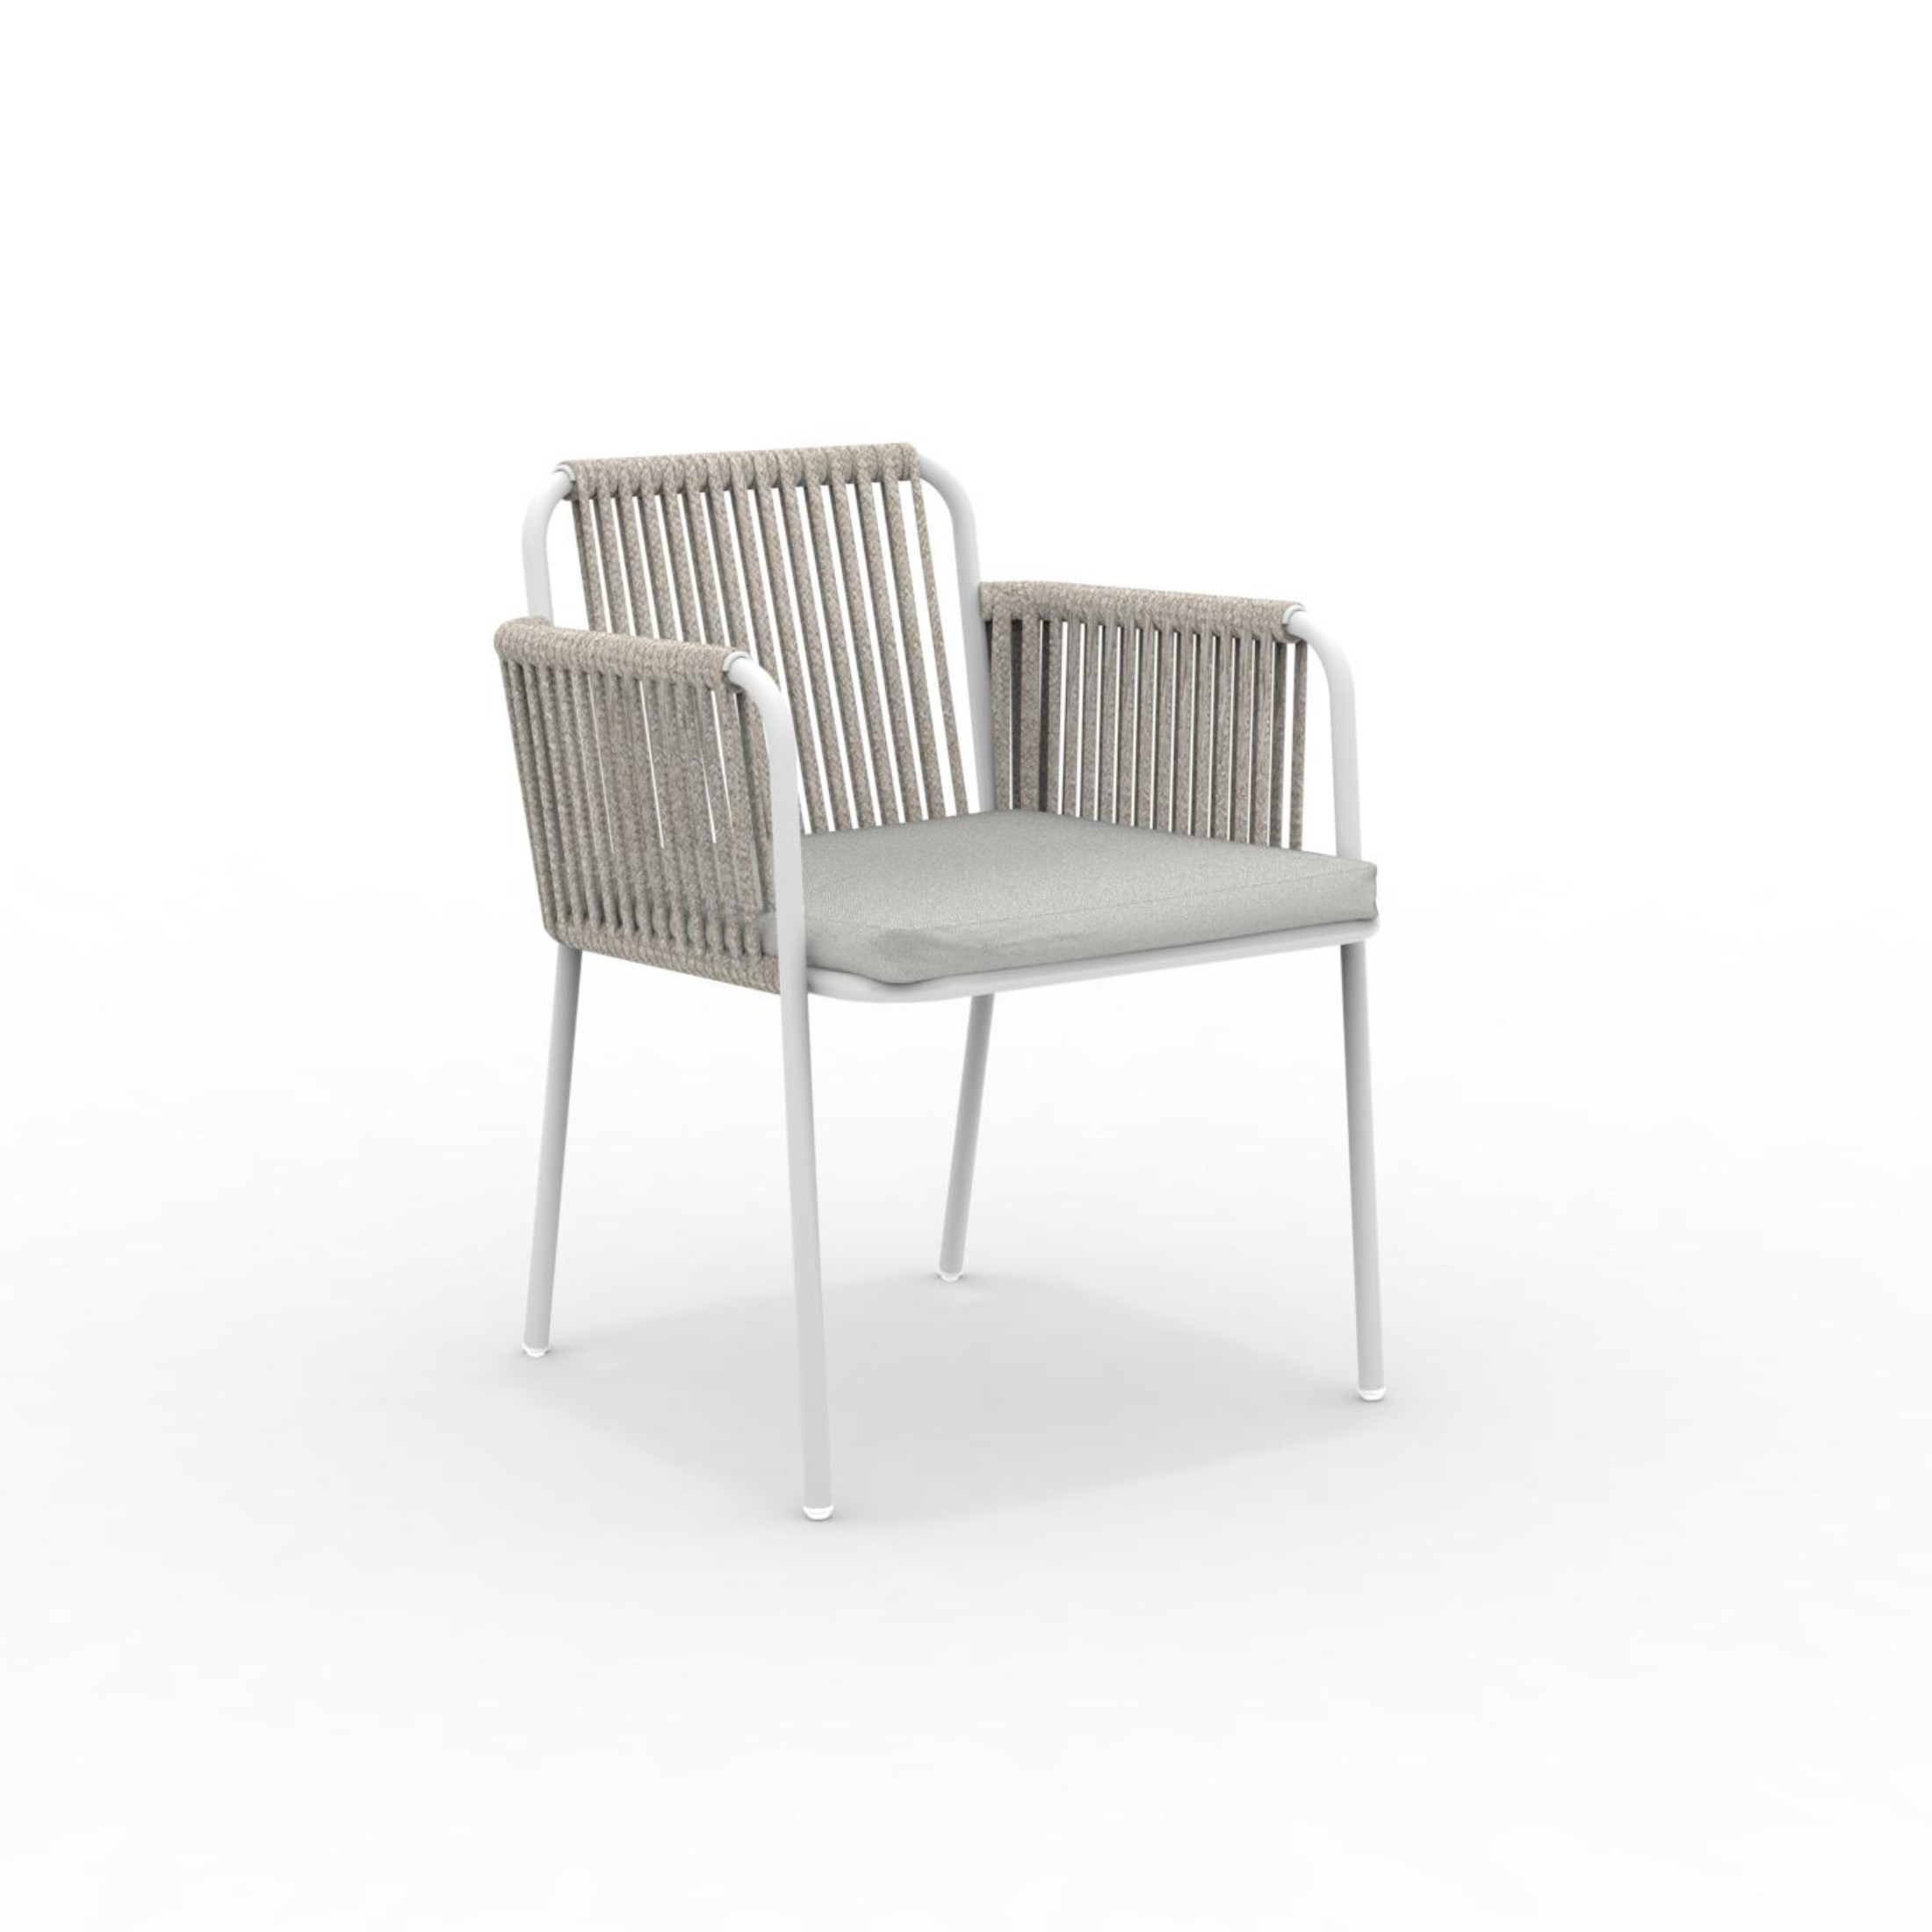 Conjunto sillón lounge con cojín y respaldo de cuerda "Key West" apilable 62x66 cm 85h